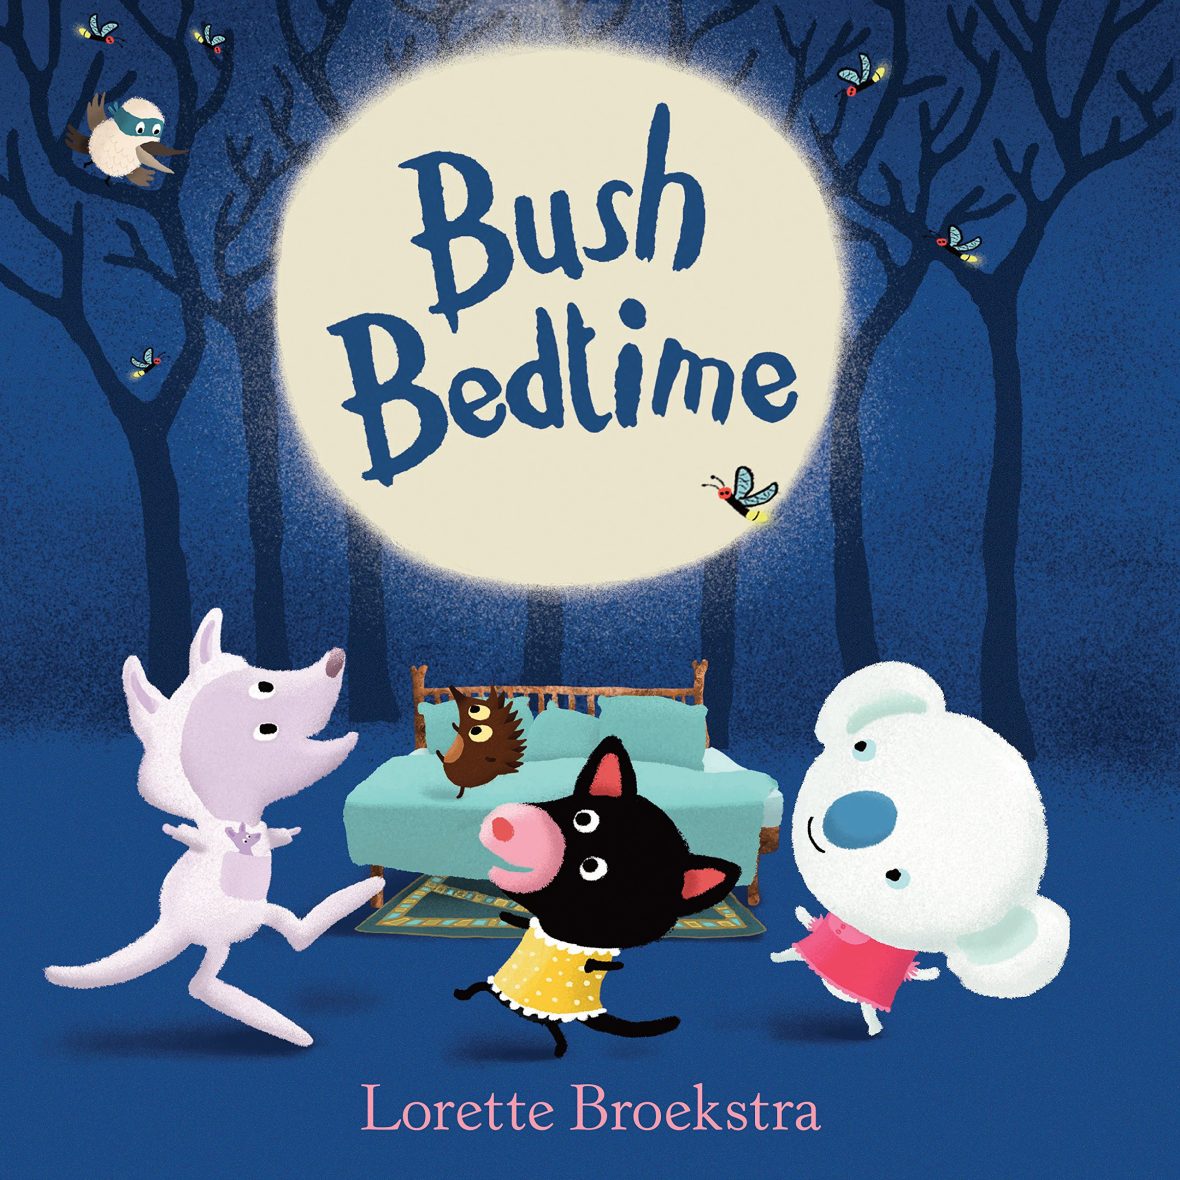 Bush Bedtime (Picture Book)